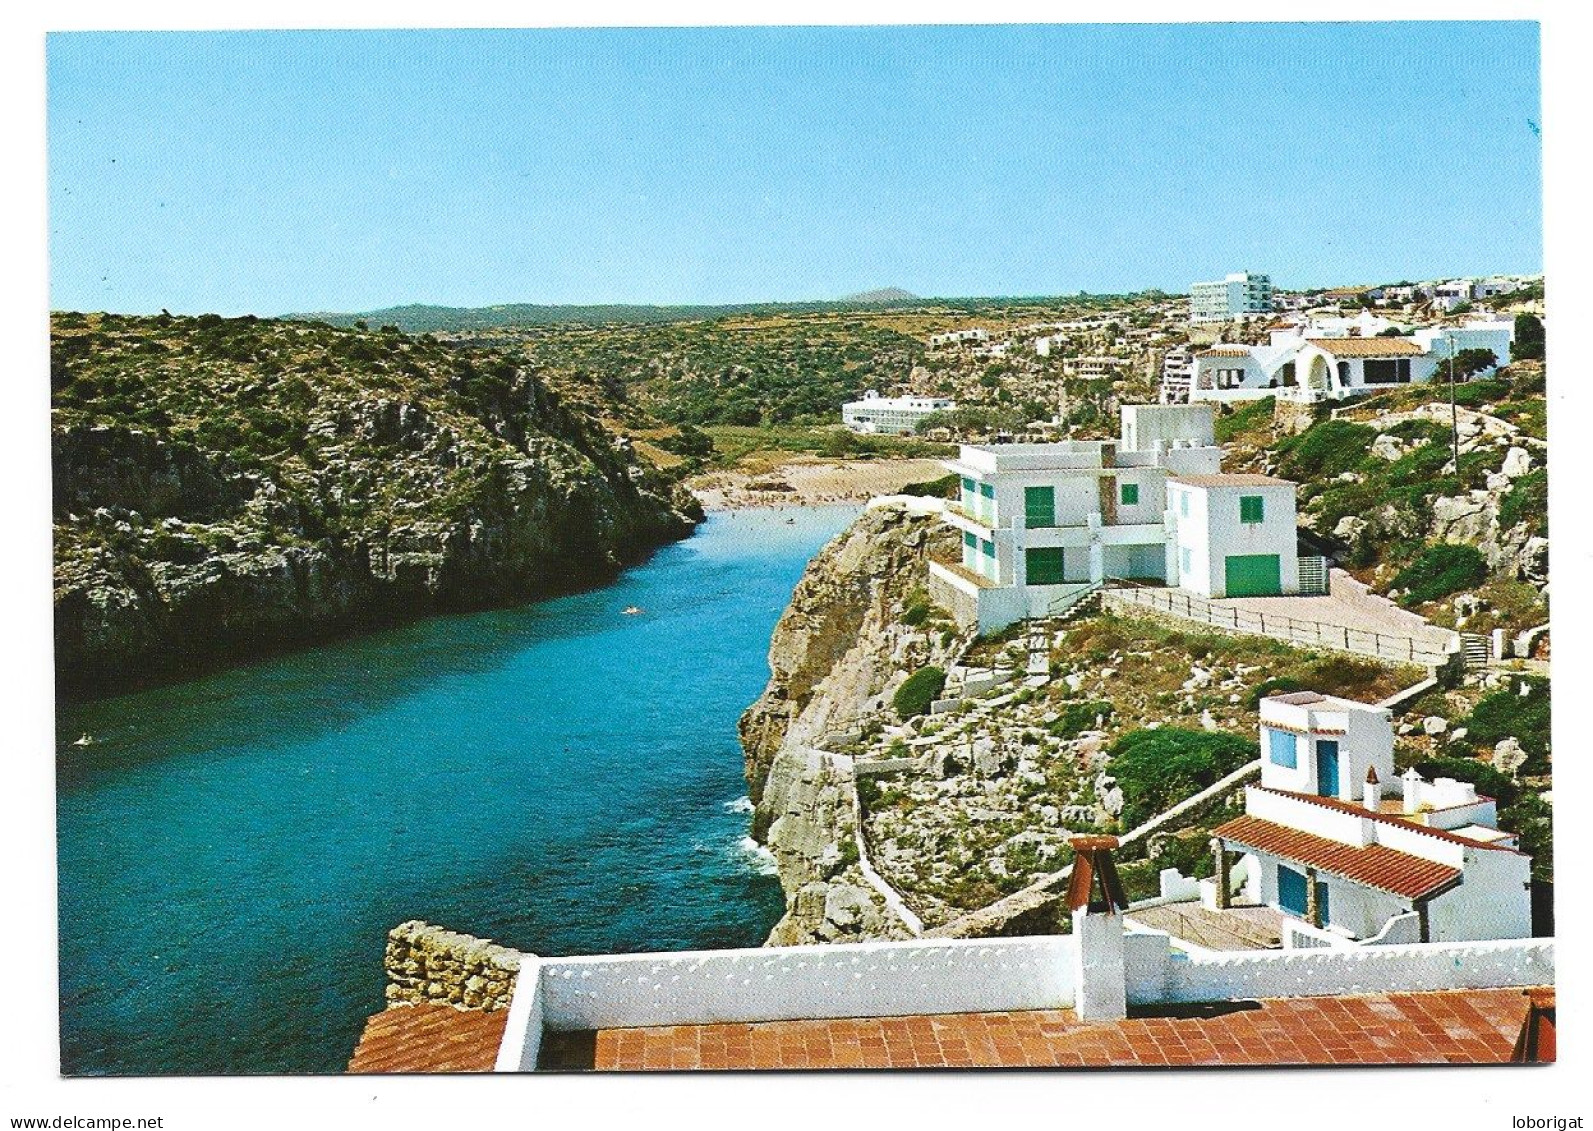 CALA'N PORTER - ALAYOR - MENORCA.- ILLES BALEARS - Menorca